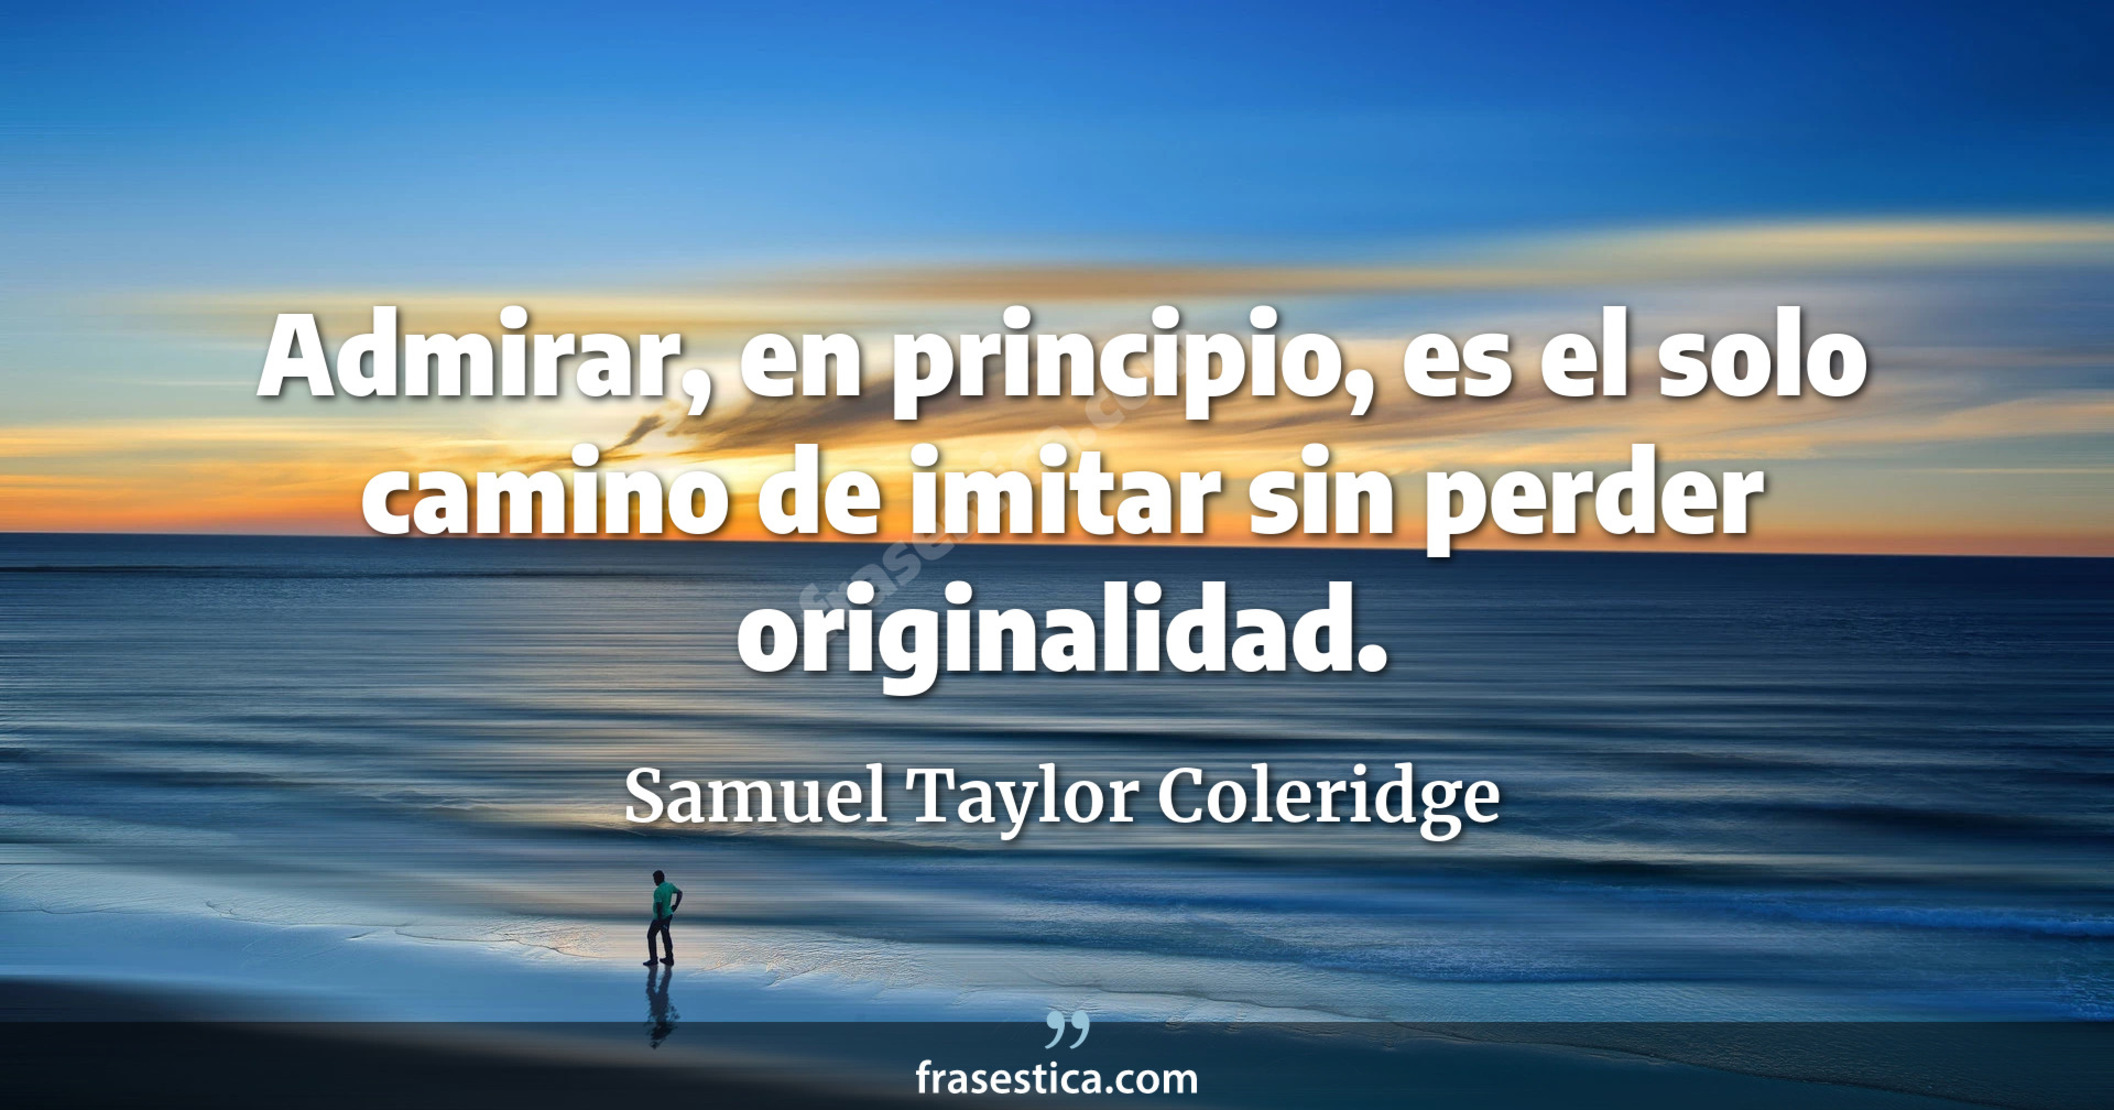 Admirar, en principio, es el solo camino de imitar sin perder originalidad. - Samuel Taylor Coleridge